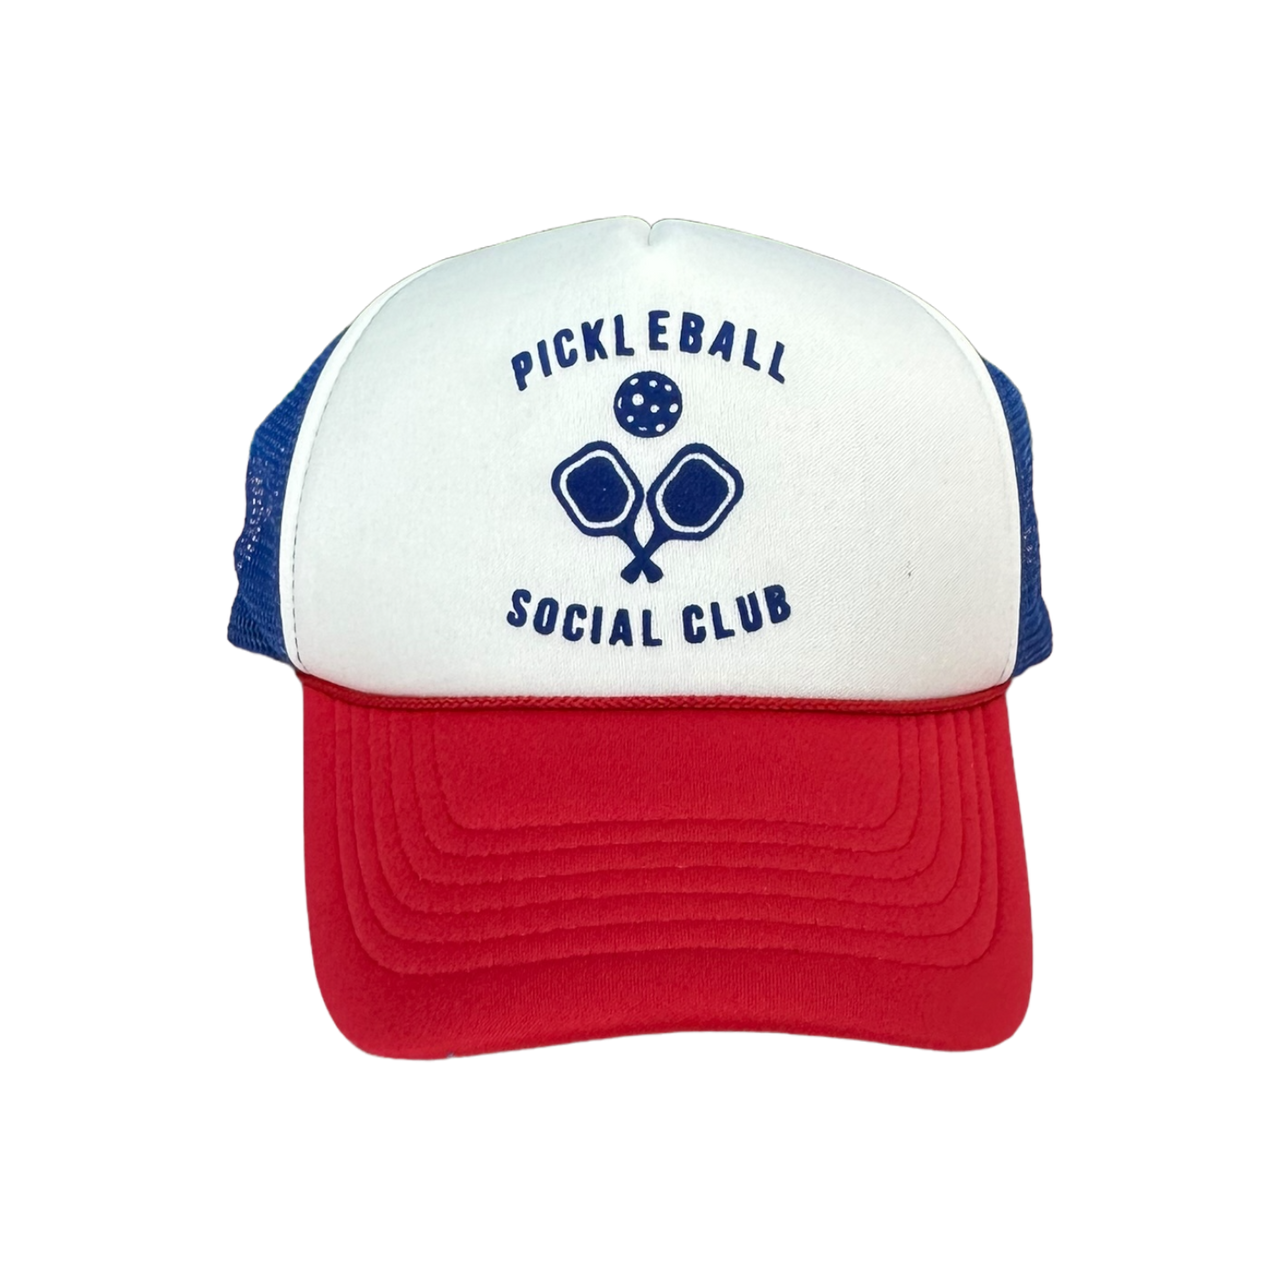 Pickleball Social Club - Red, White, Blue Trucker